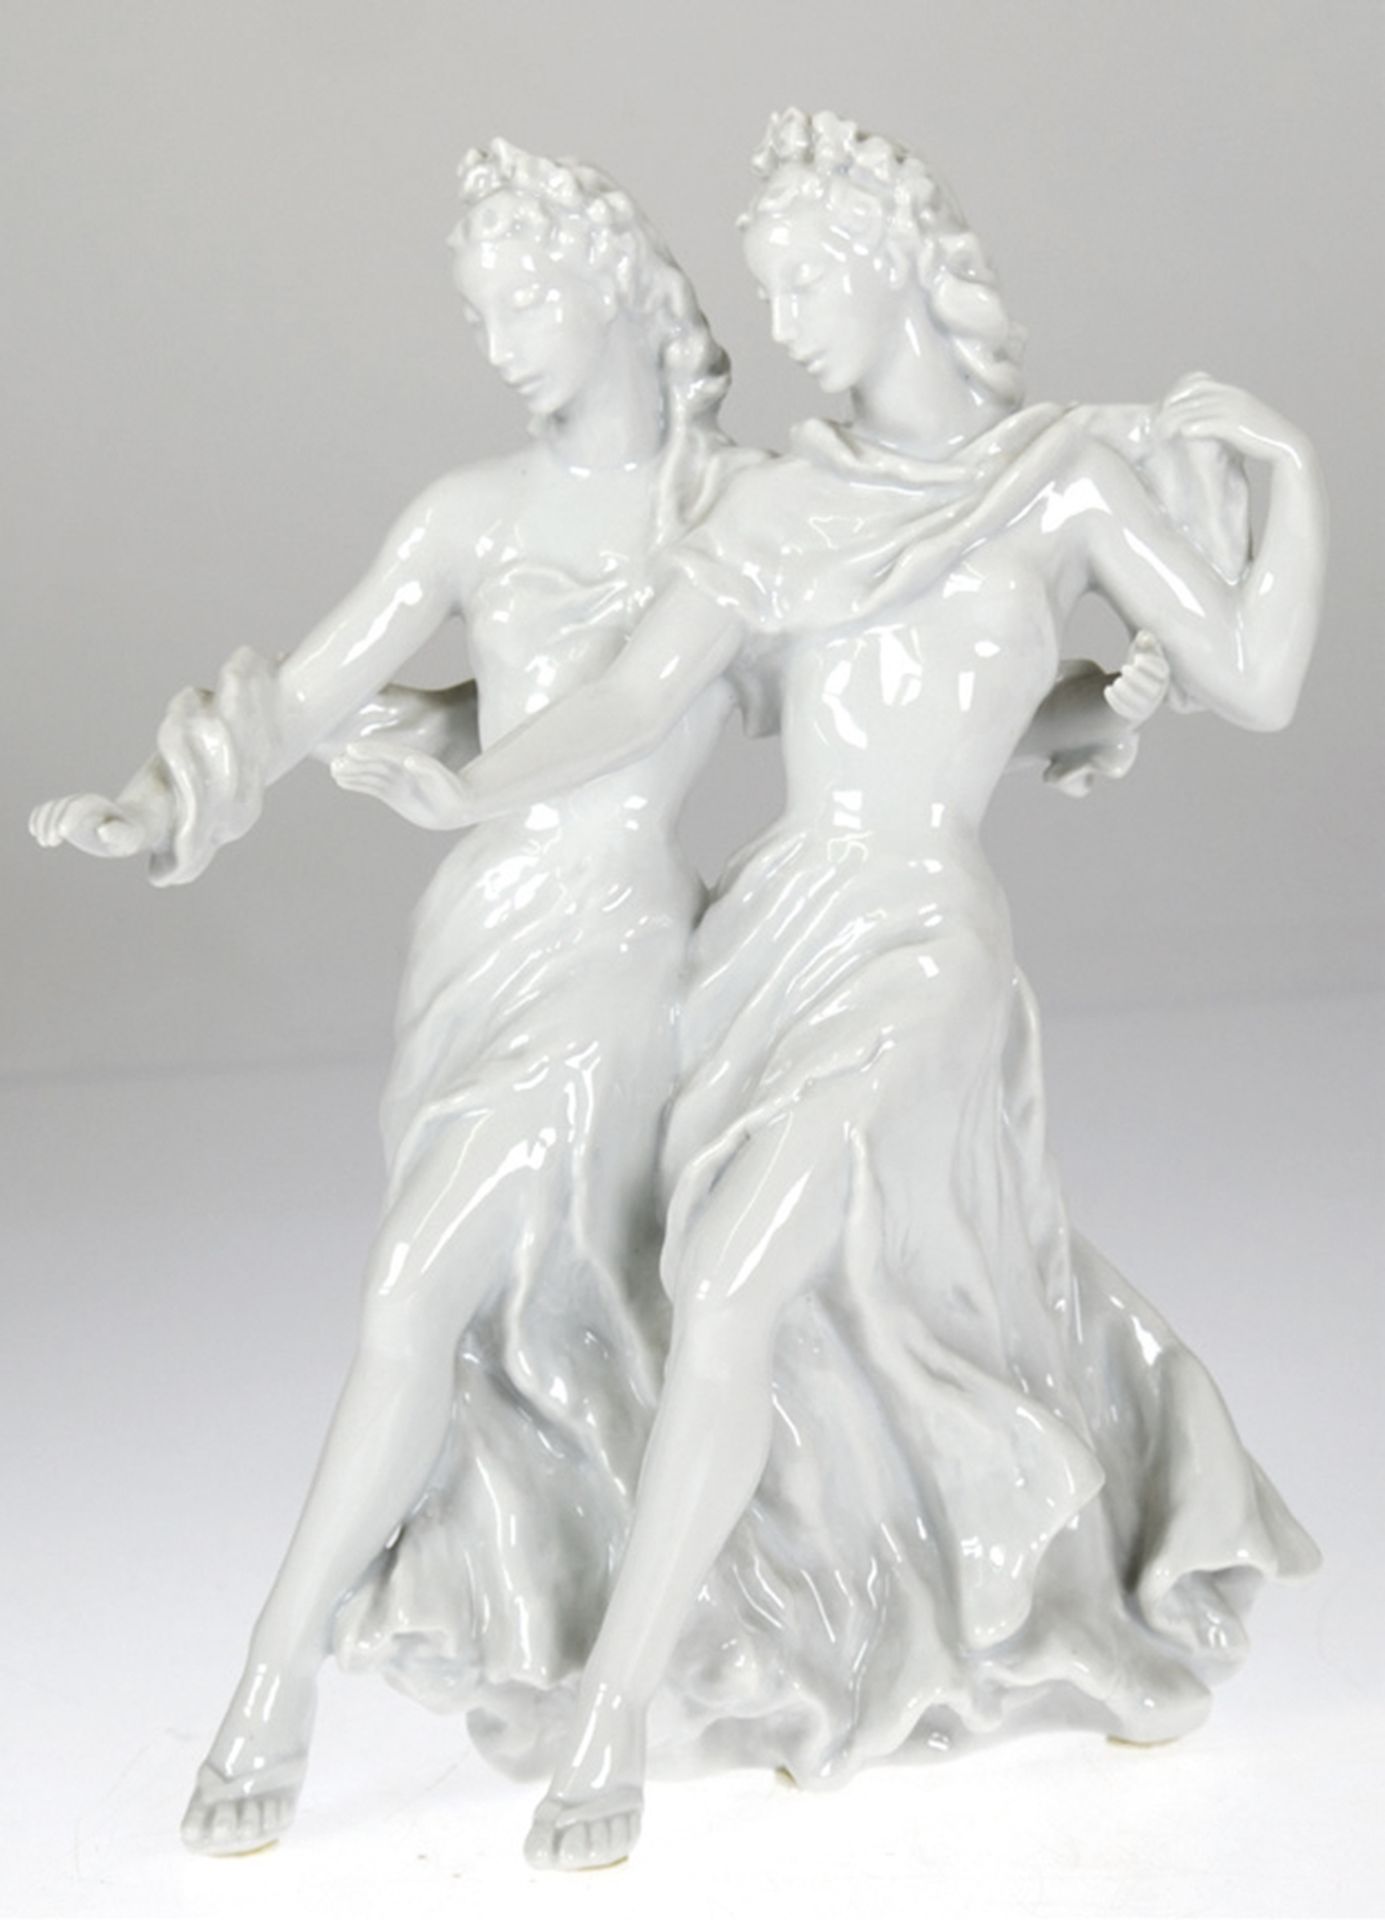 Rosenthal-Figur "Zwei tanzende junge Frauen", weiß, glasiert, Entw. Lore Friedrich-Gronau, untersei